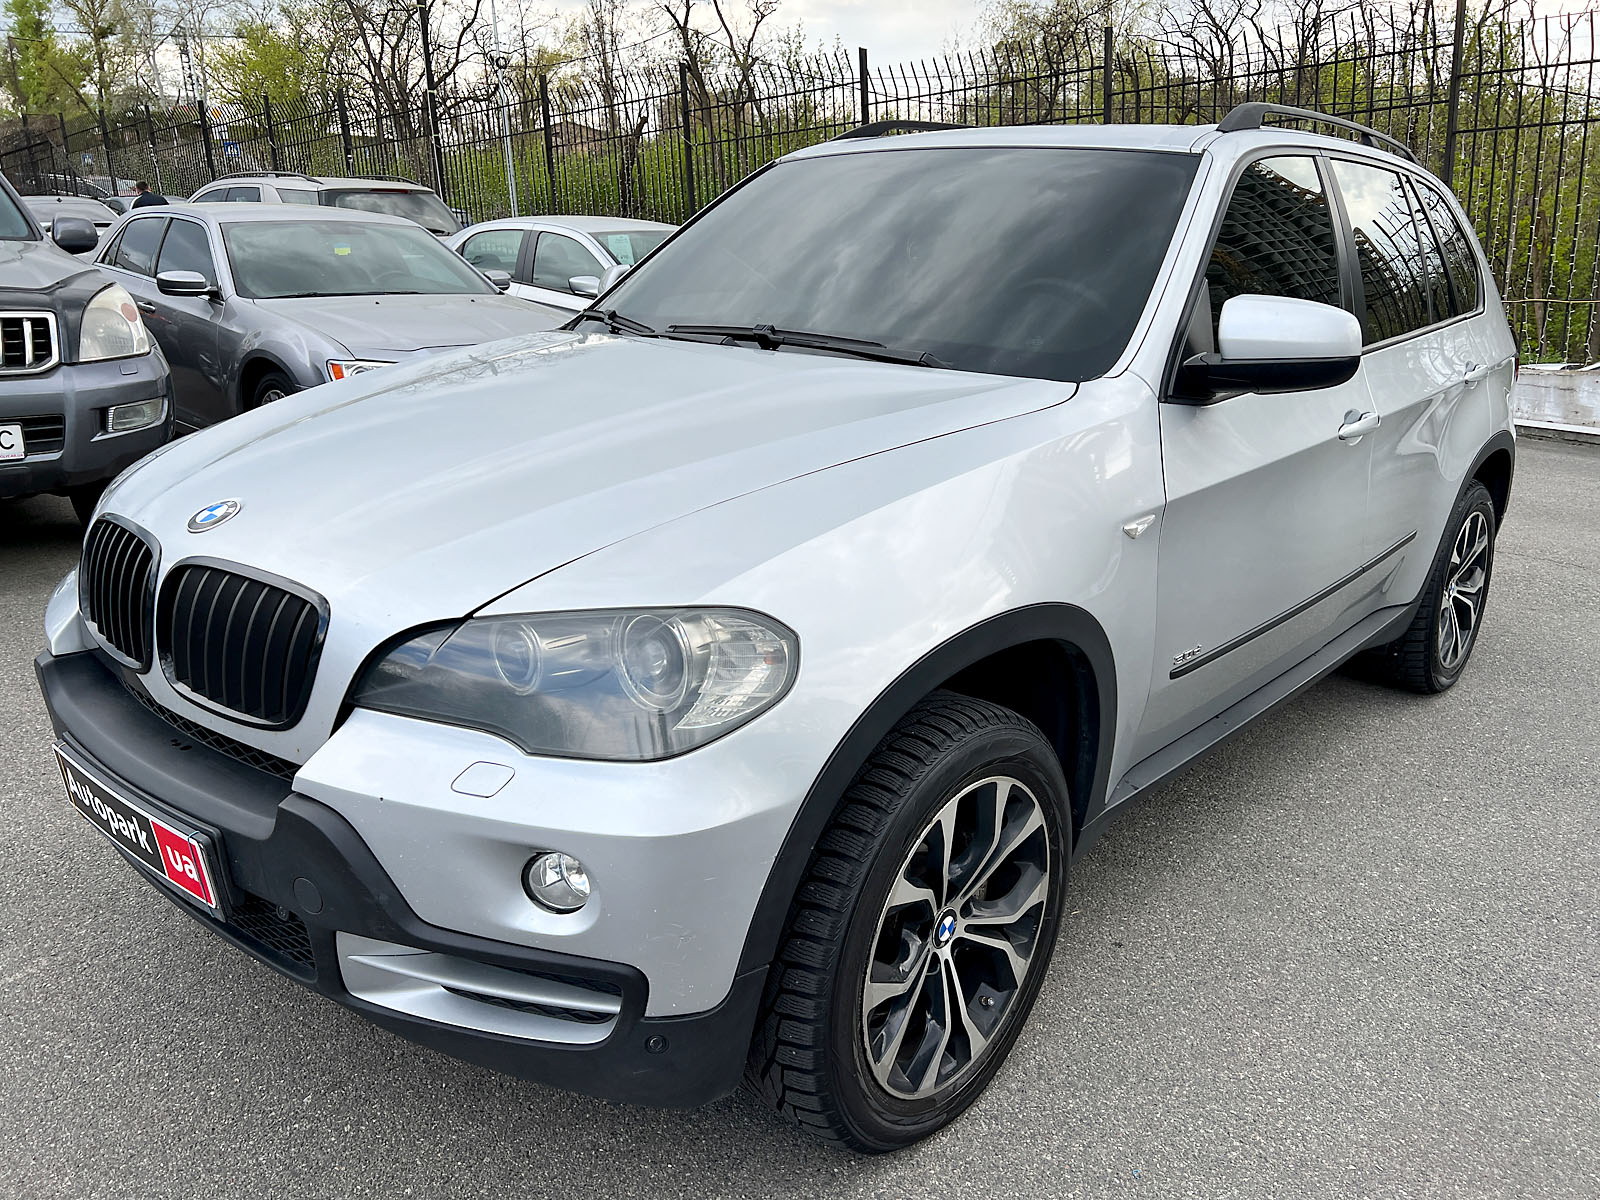 Автомобили BMW X5 2017 купить в Украине, цена на б/у автомобили 